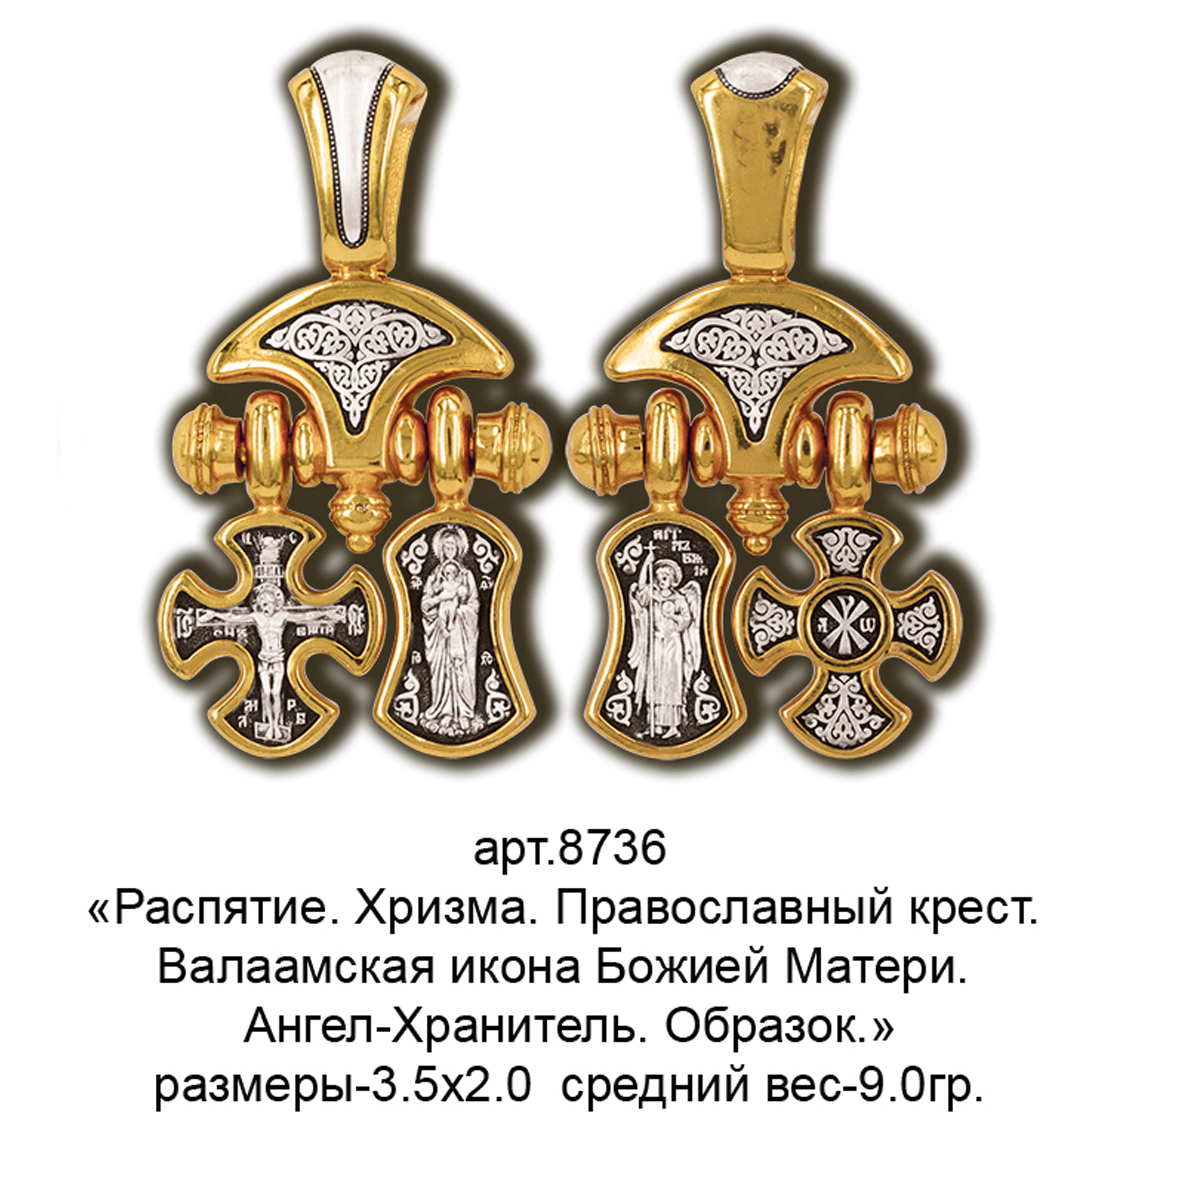 Православный ювелирный магазин